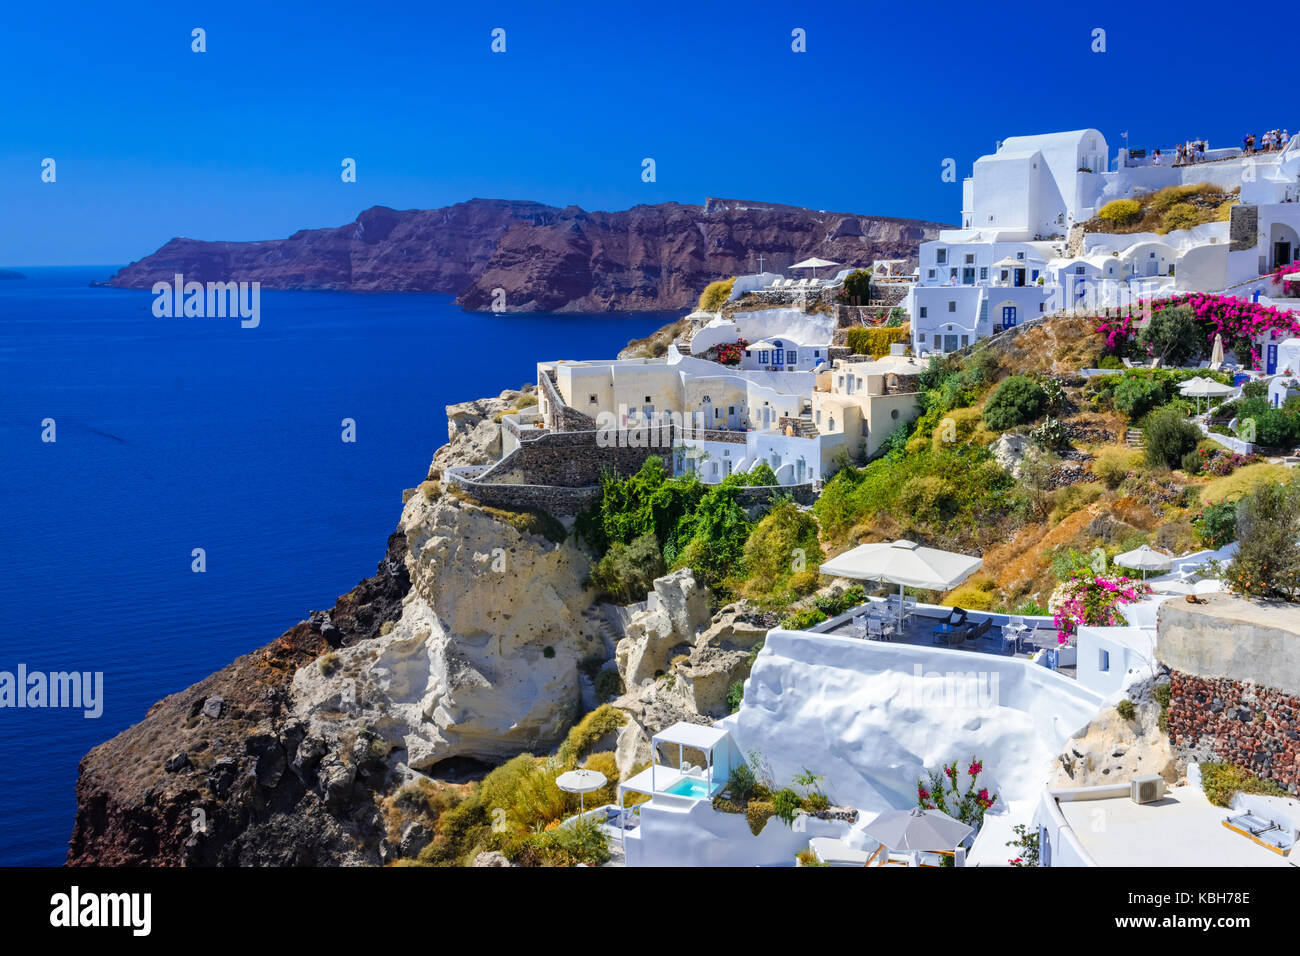 La cittadina di Oia - Santorini Island, Grecia. tradizionali e famose case bianche e chiese con le cupole blu sulla caldera, il mare Egeo. Foto Stock